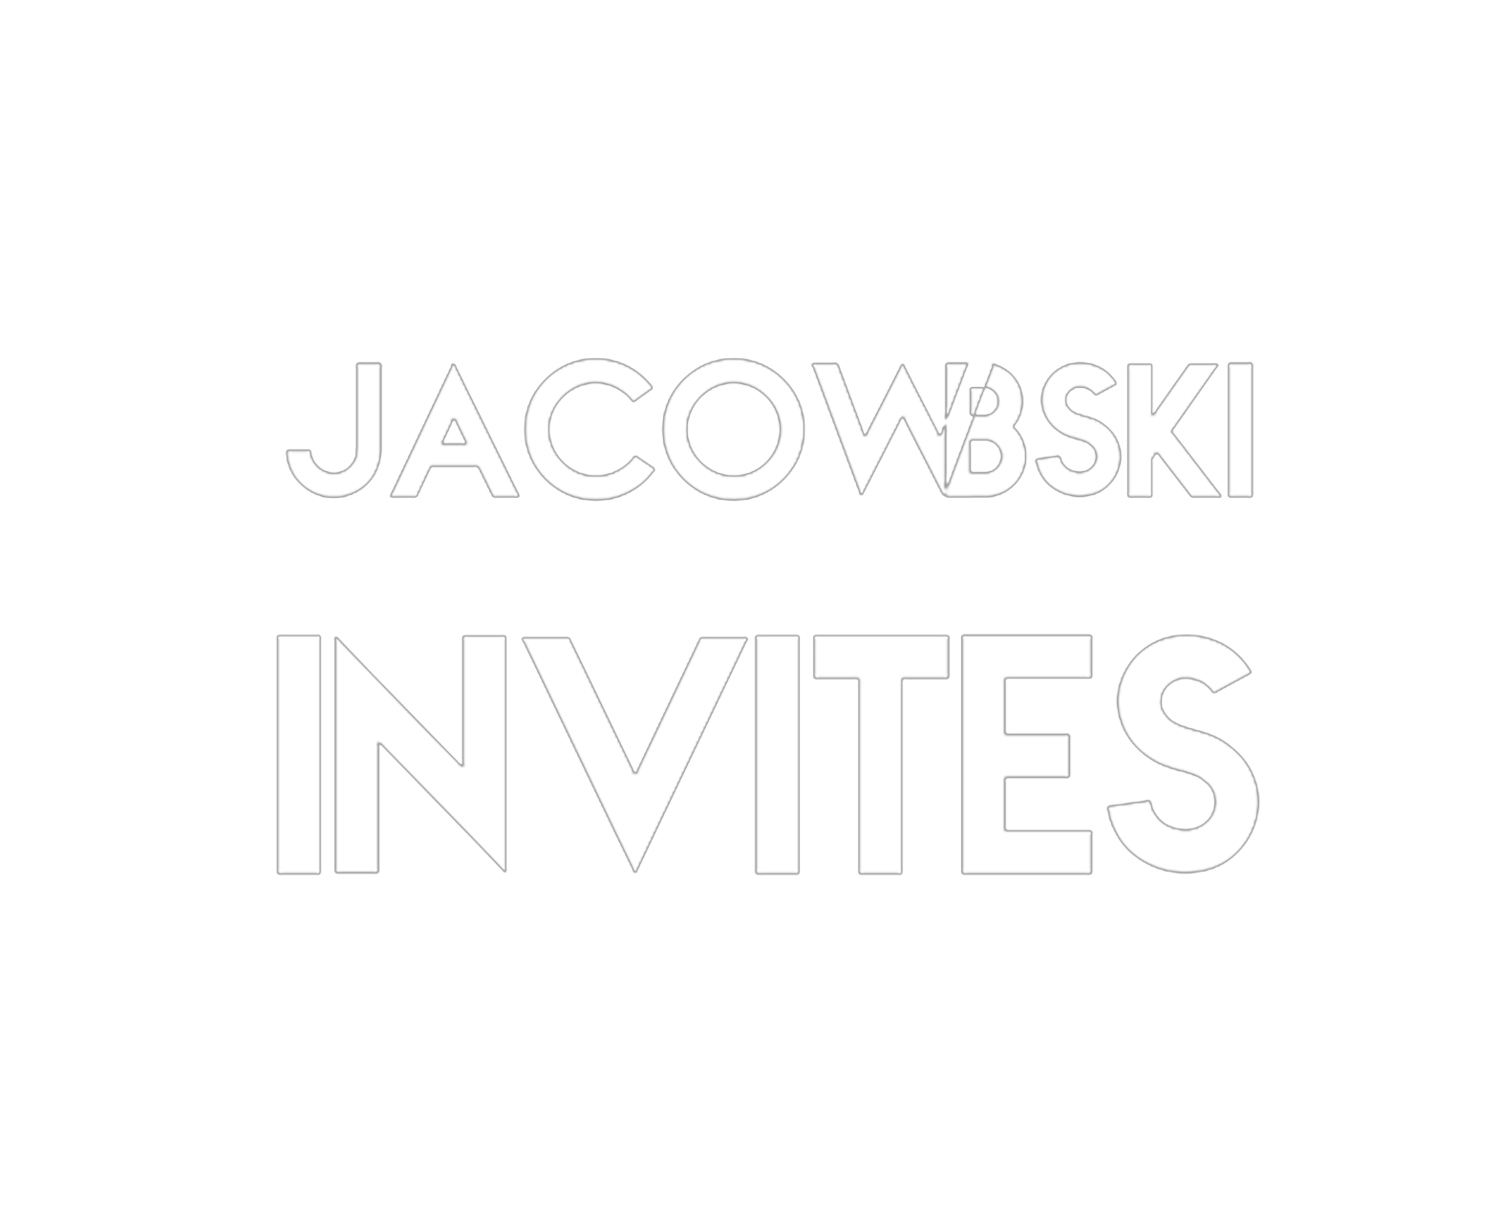 Jacowbski Invites